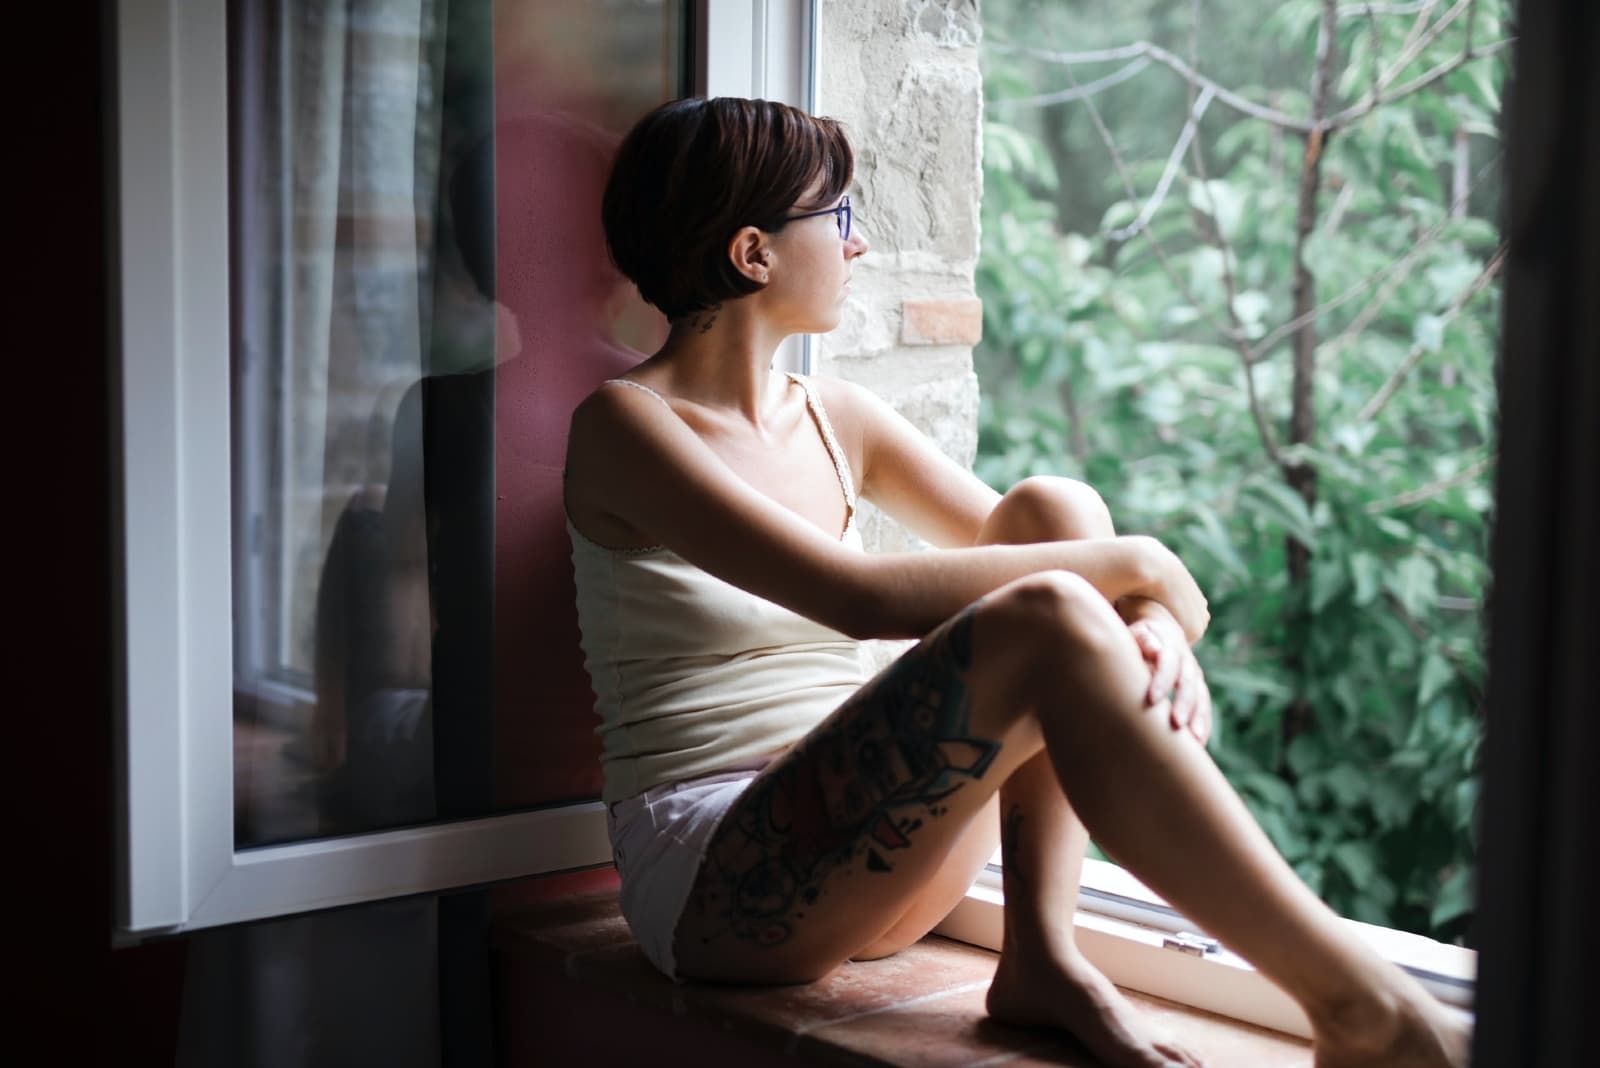 donna in top bianco seduta sul vetro della finestra che guarda fuori